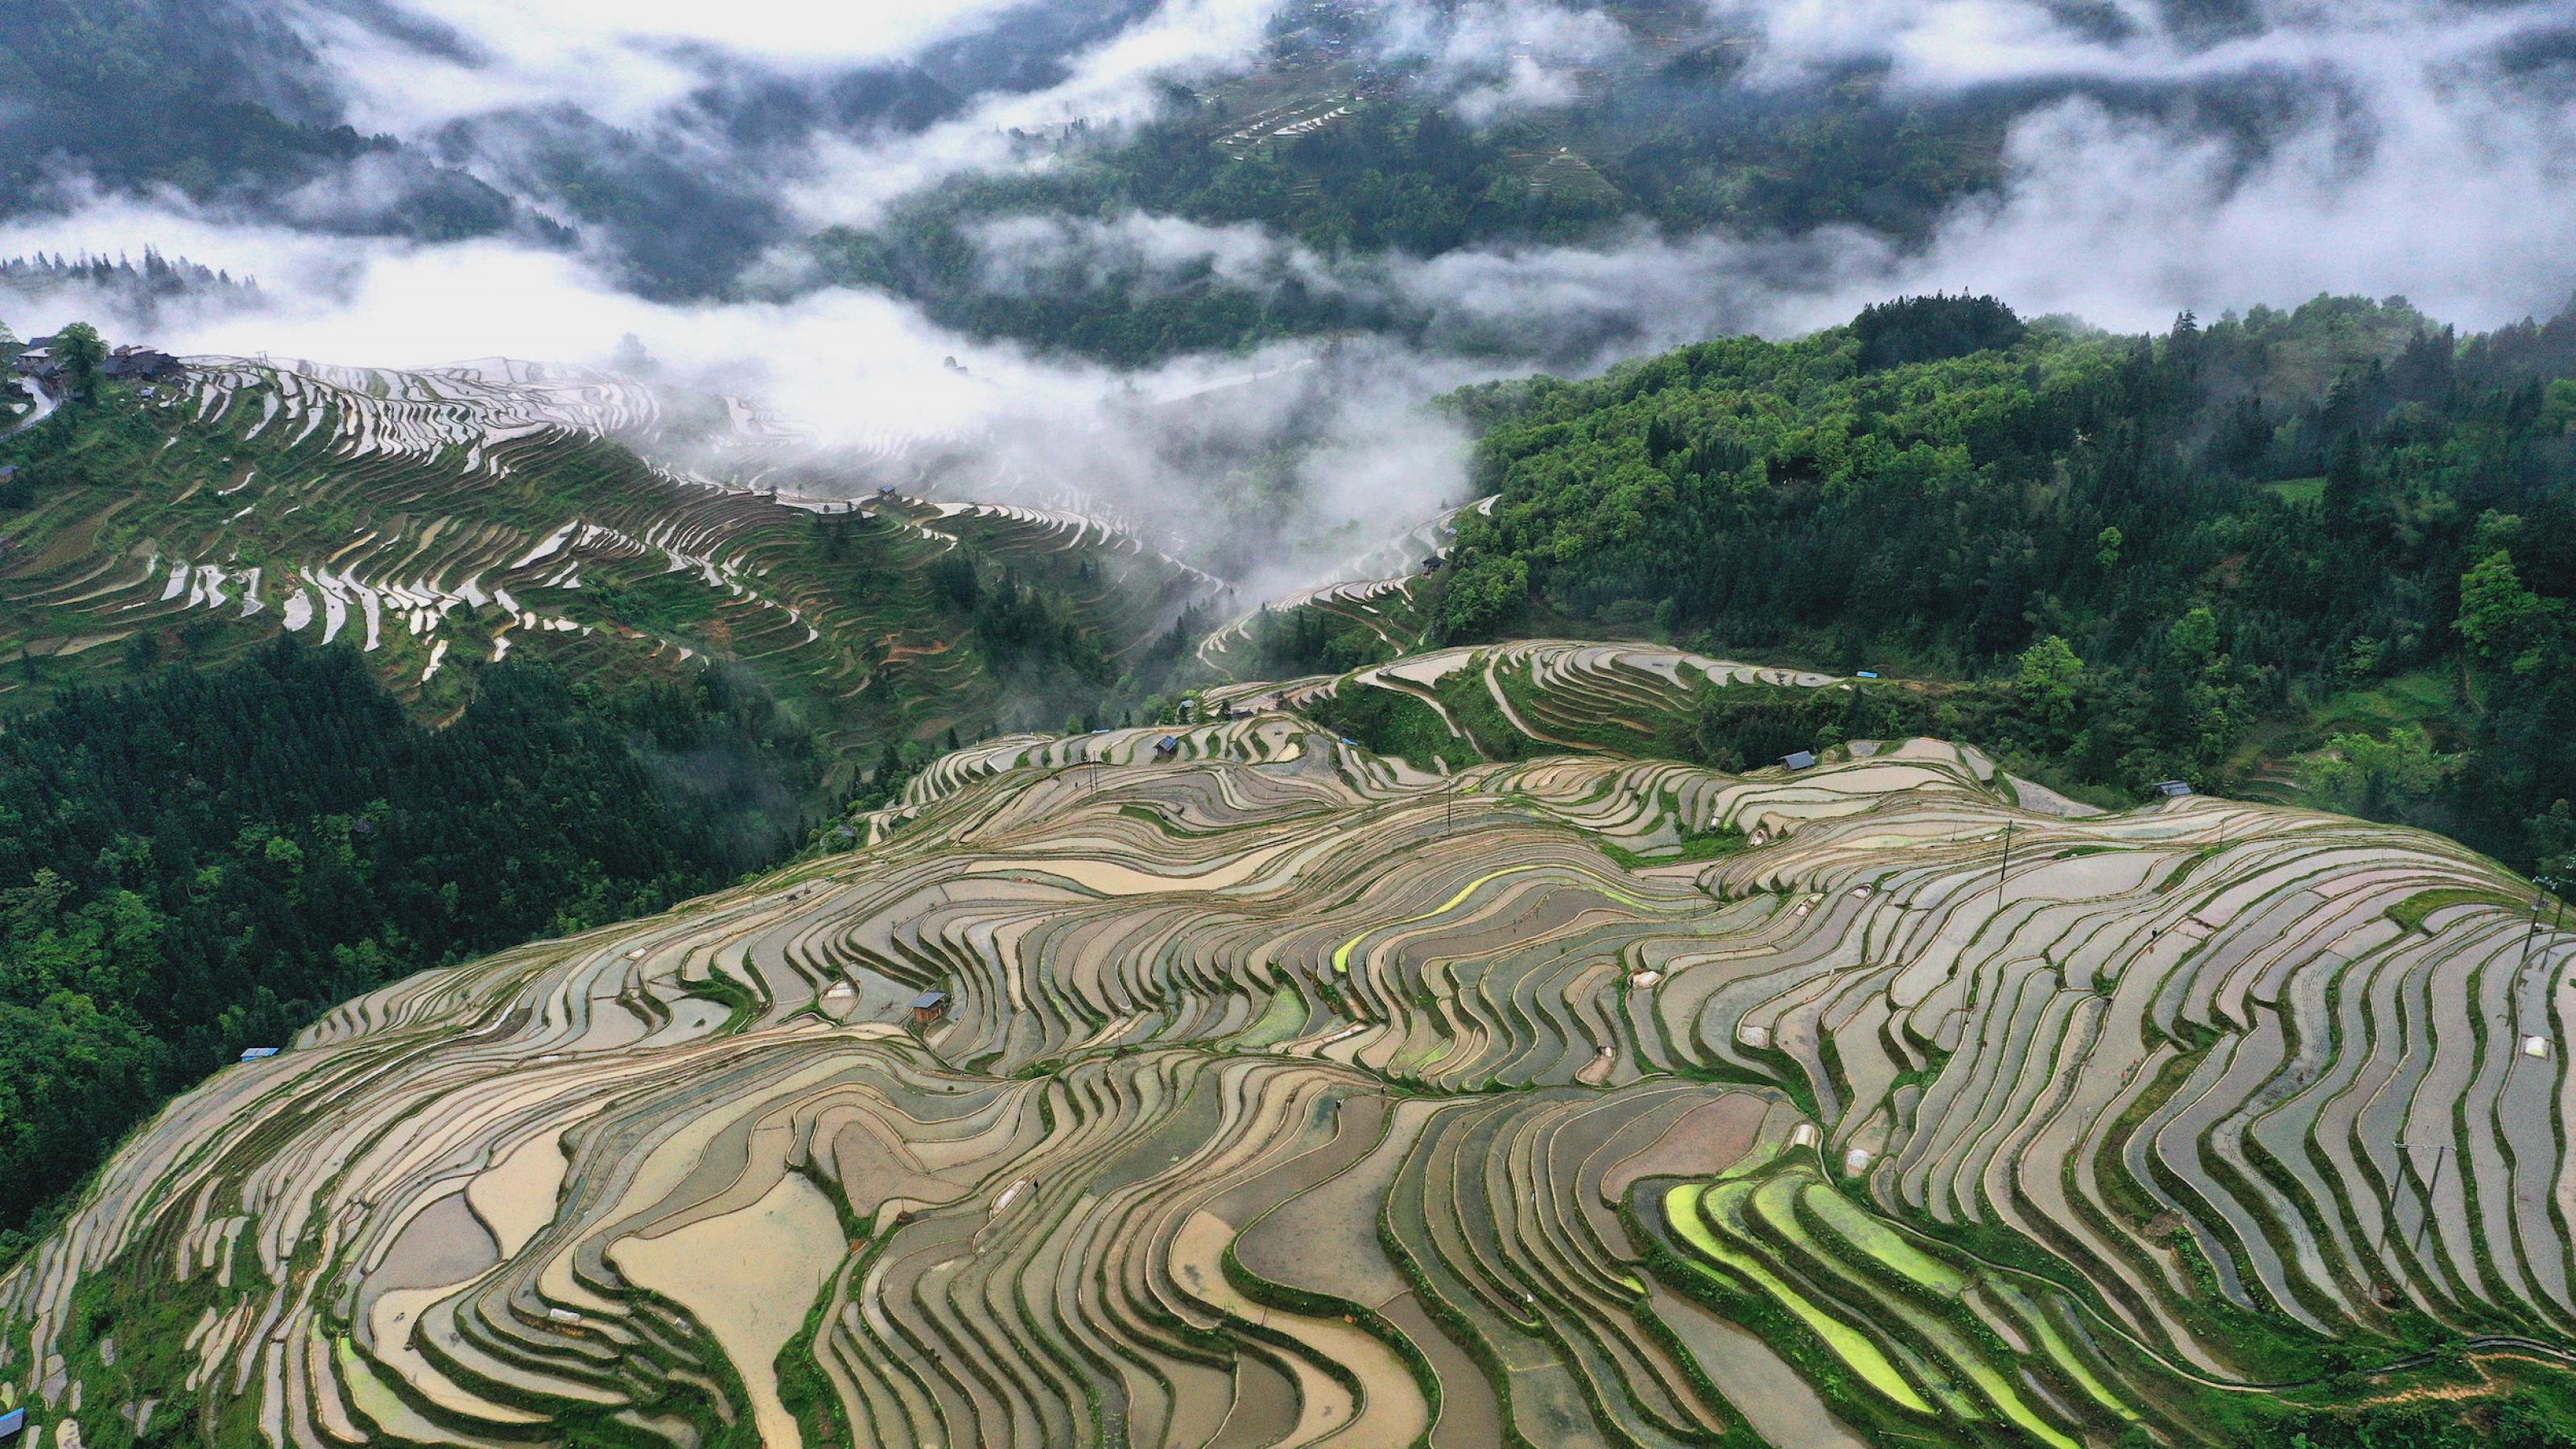 Reisterrassen in China an einem steilen Hang neben Waldflächen.